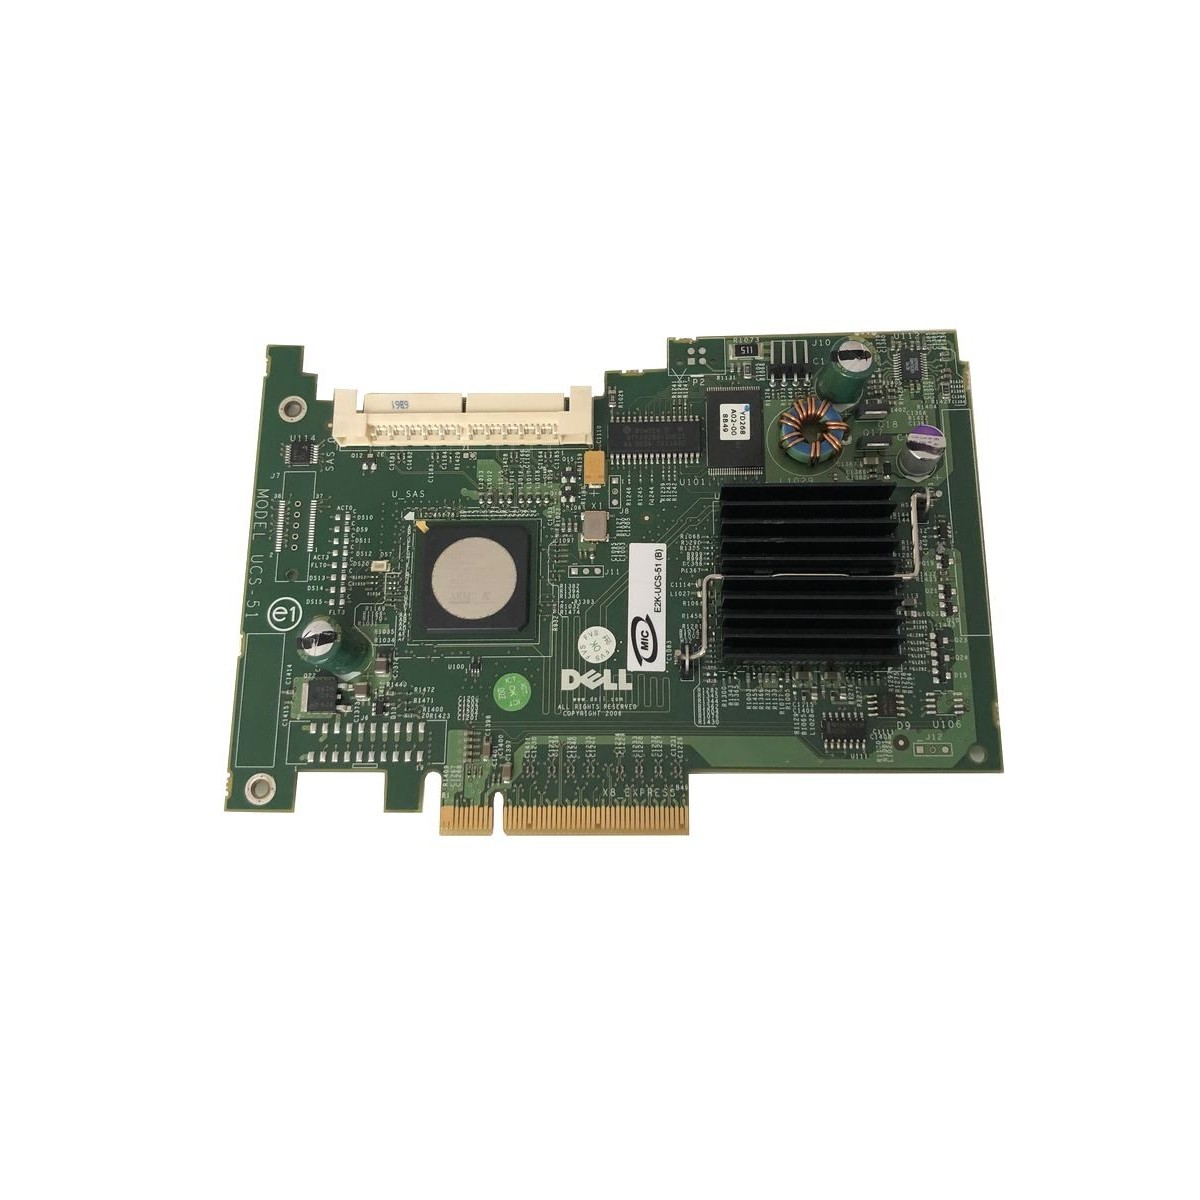 RAID DELL PERC 5iR SAS/SATA 3GB PCIe 0GU186